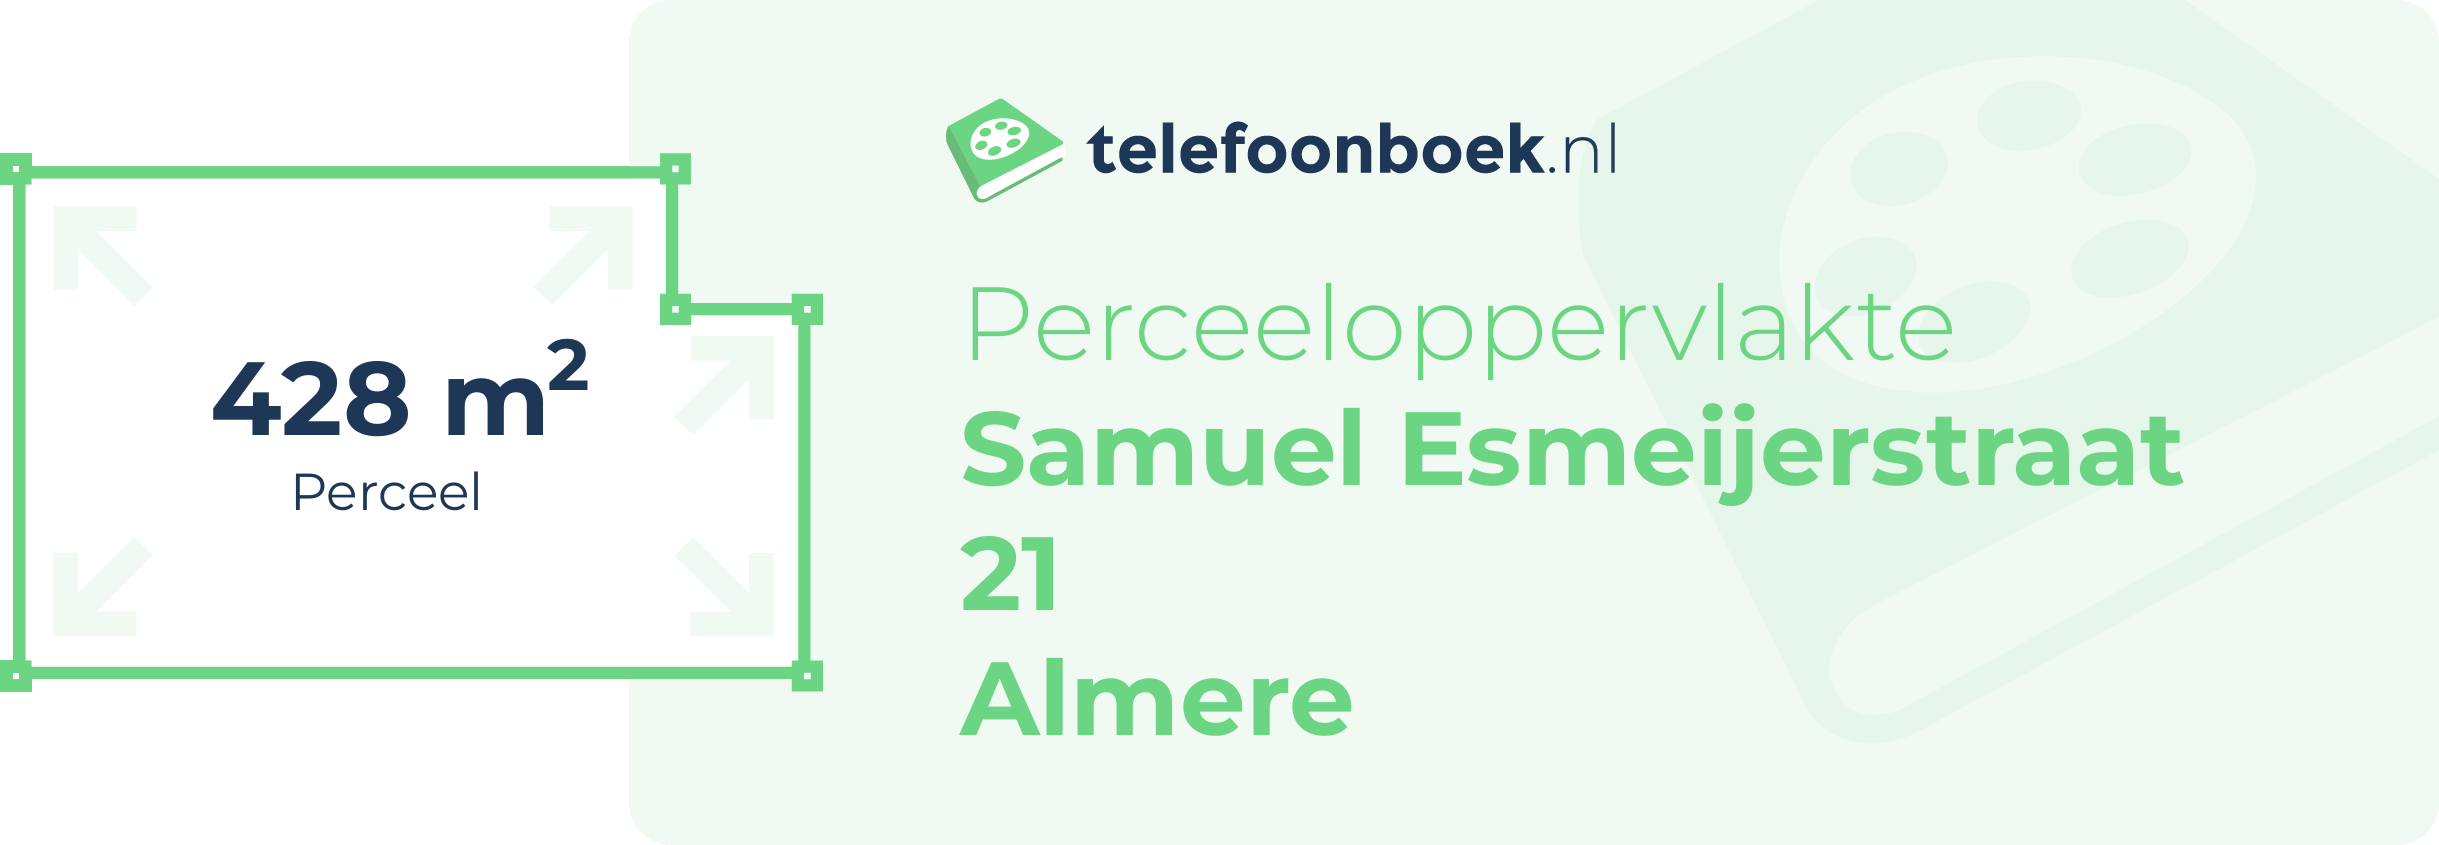 Perceeloppervlakte Samuel Esmeijerstraat 21 Almere